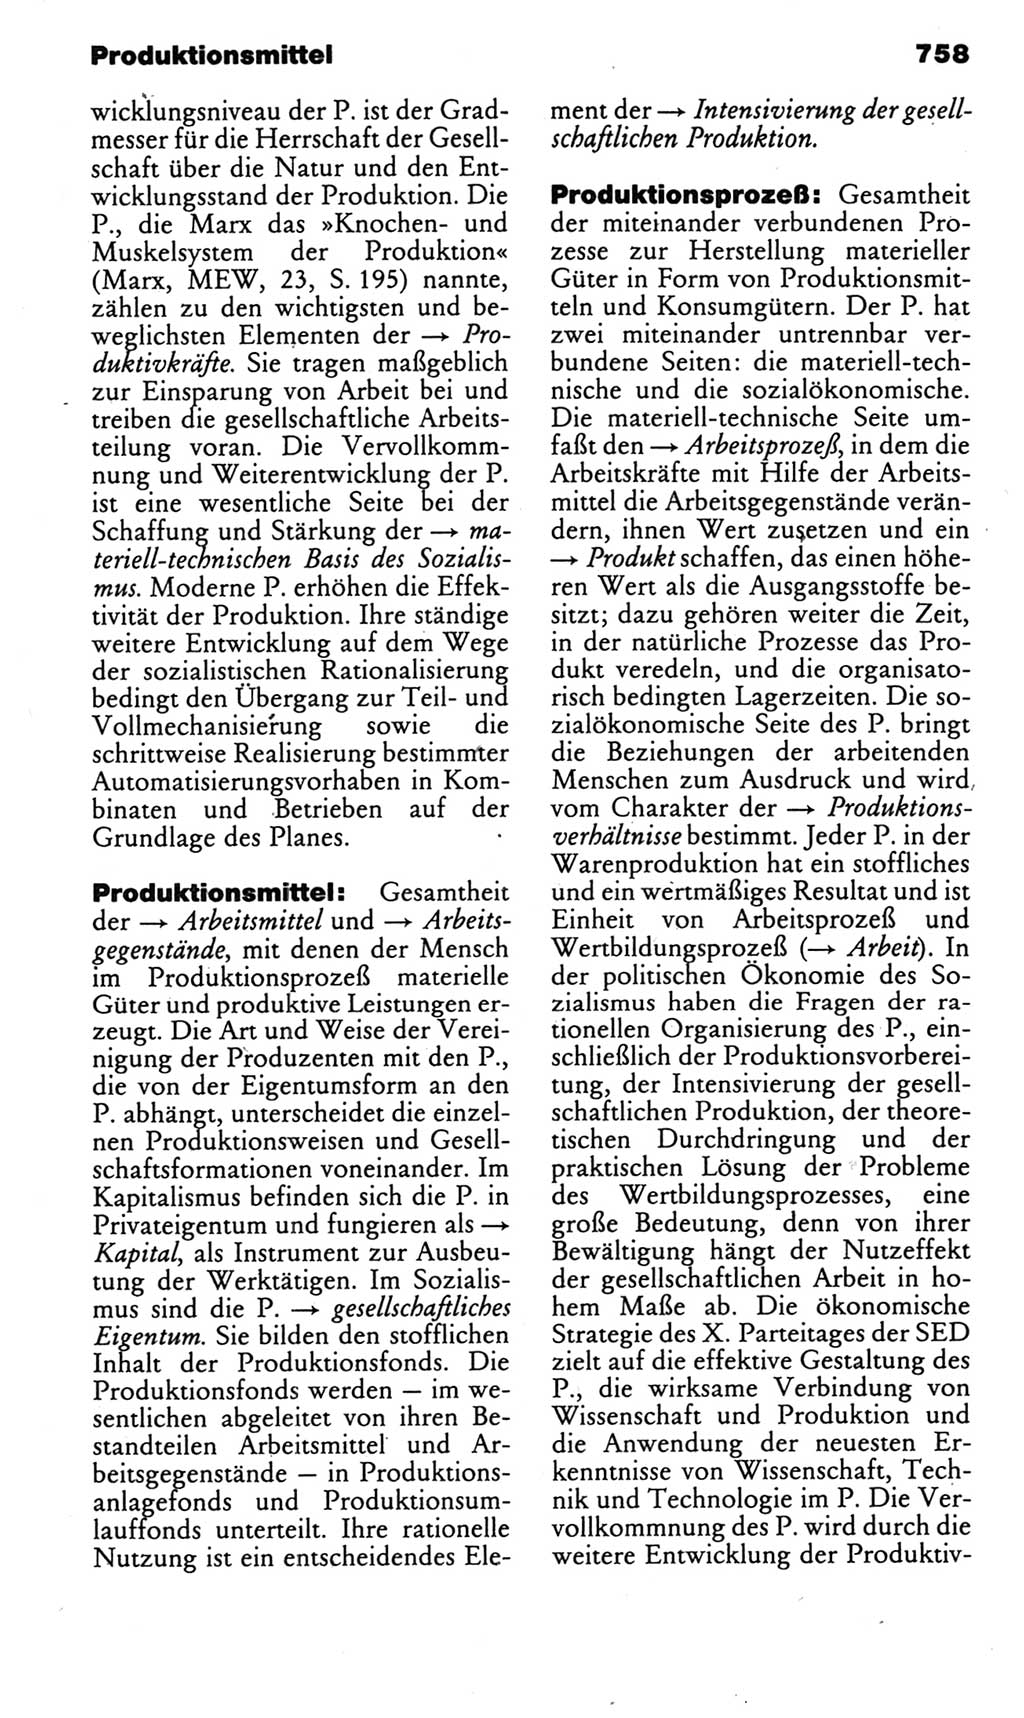 Kleines politisches Wörterbuch [Deutsche Demokratische Republik (DDR)] 1985, Seite 758 (Kl. pol. Wb. DDR 1985, S. 758)